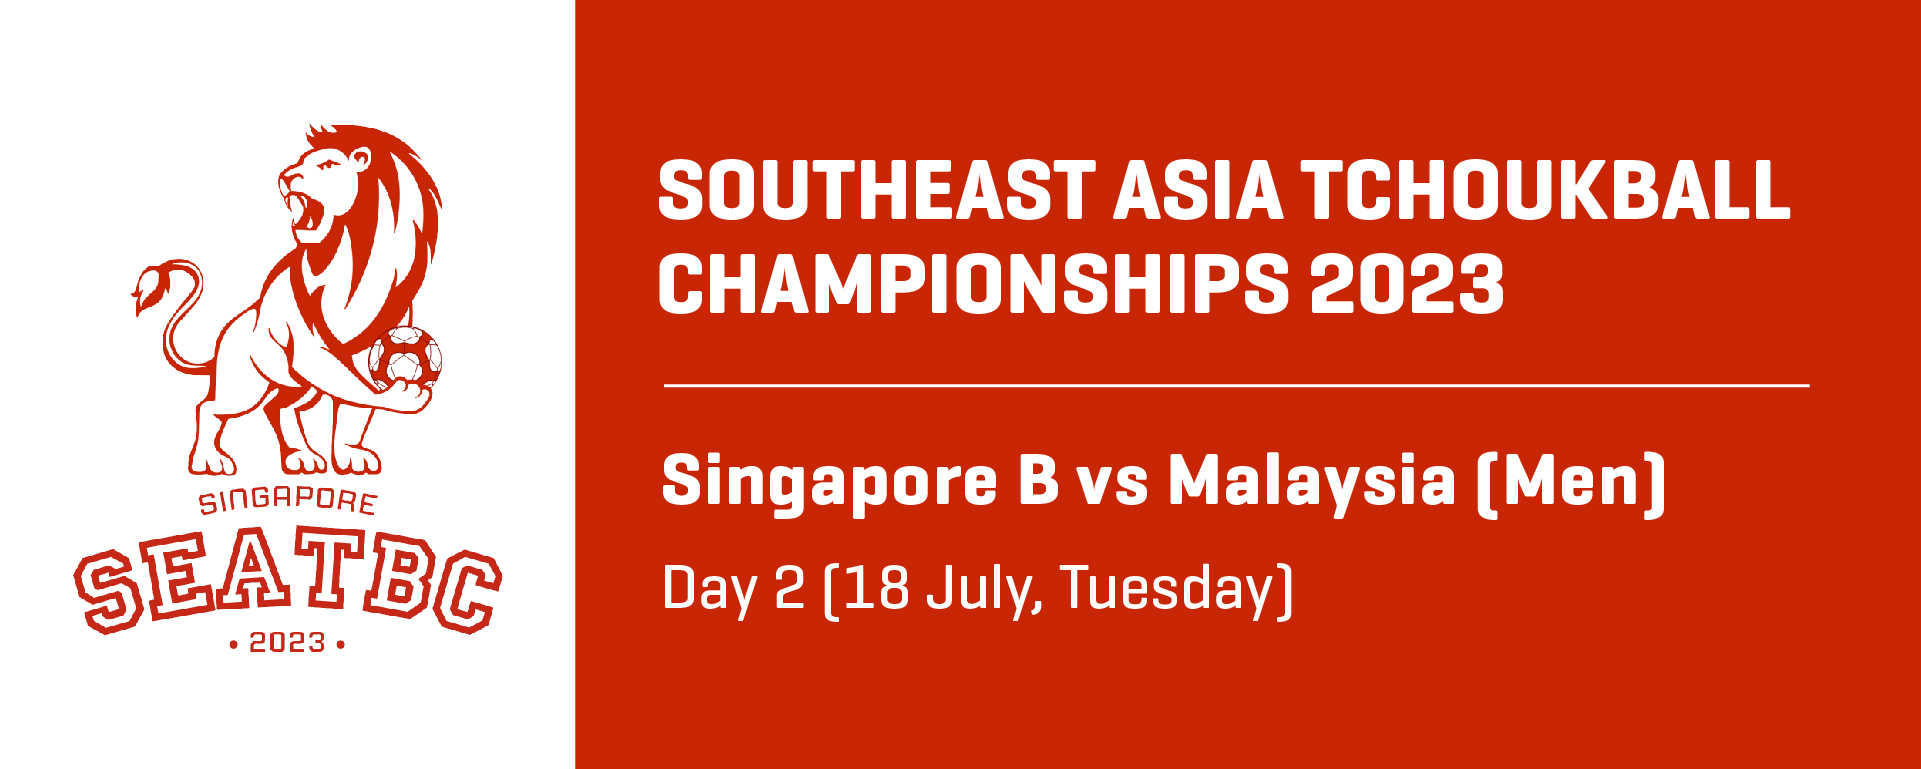 Southeast Asia Tchoukball Championships 2023 | Men | Singapore B vs Malaysia